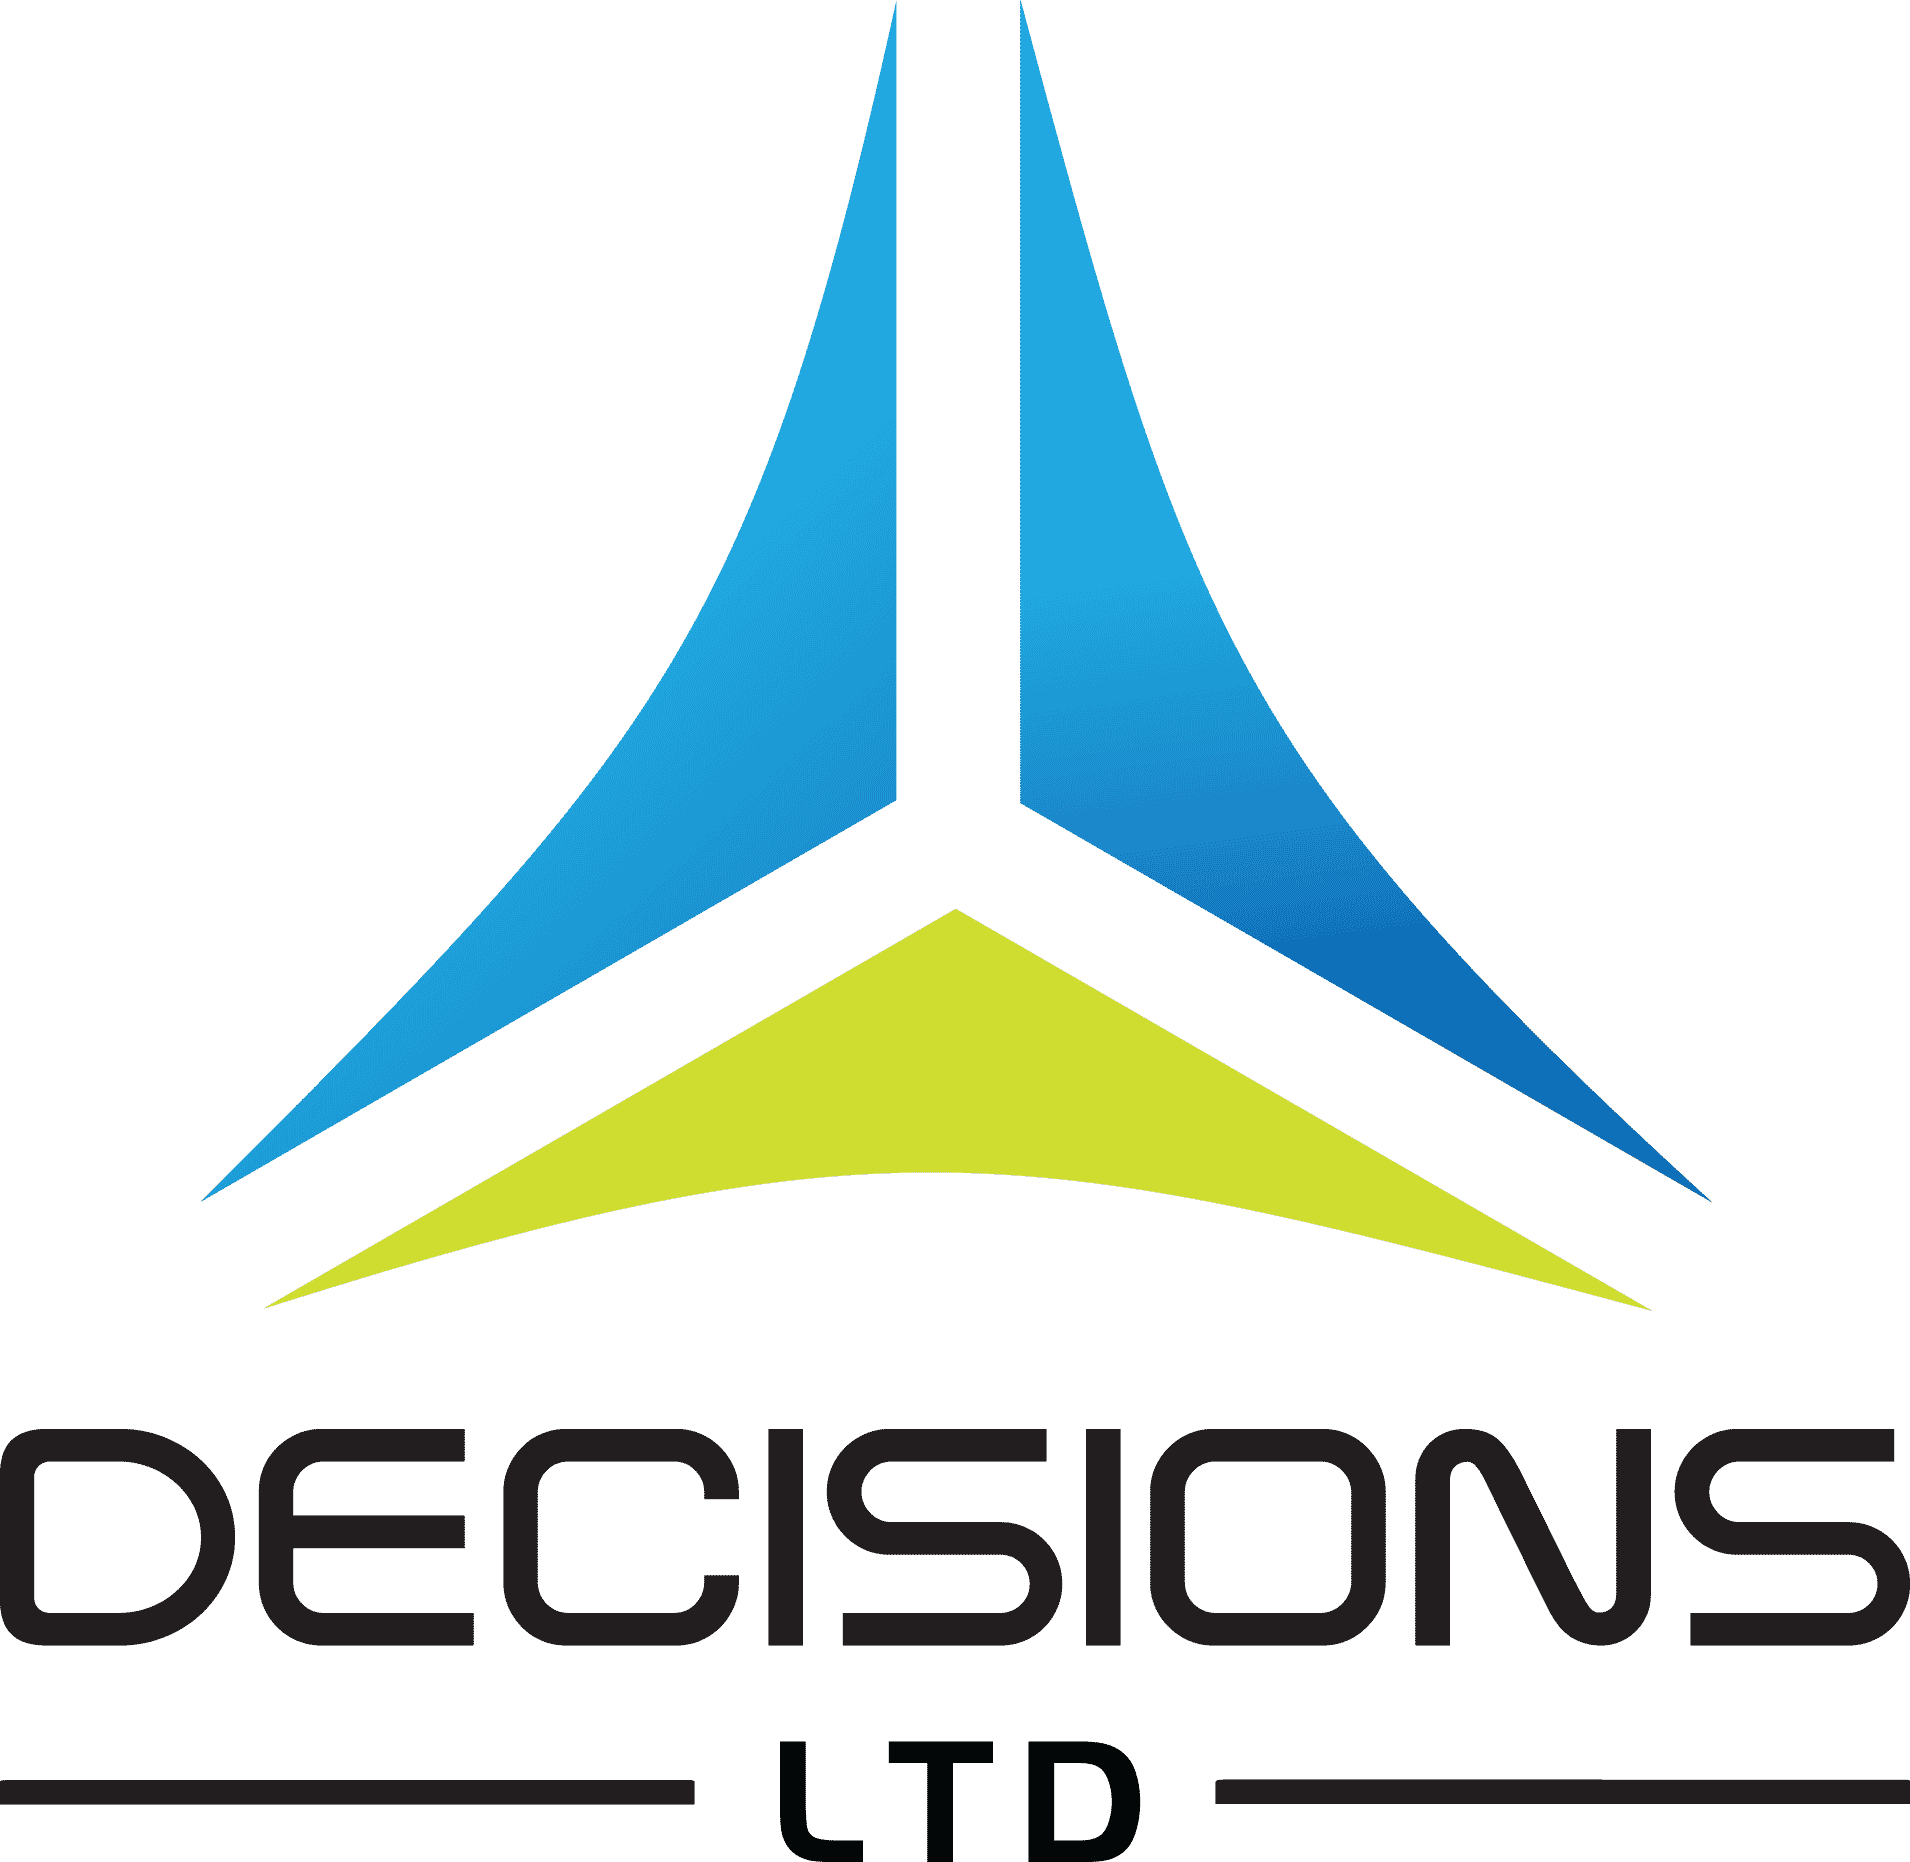 Decisions Ltd